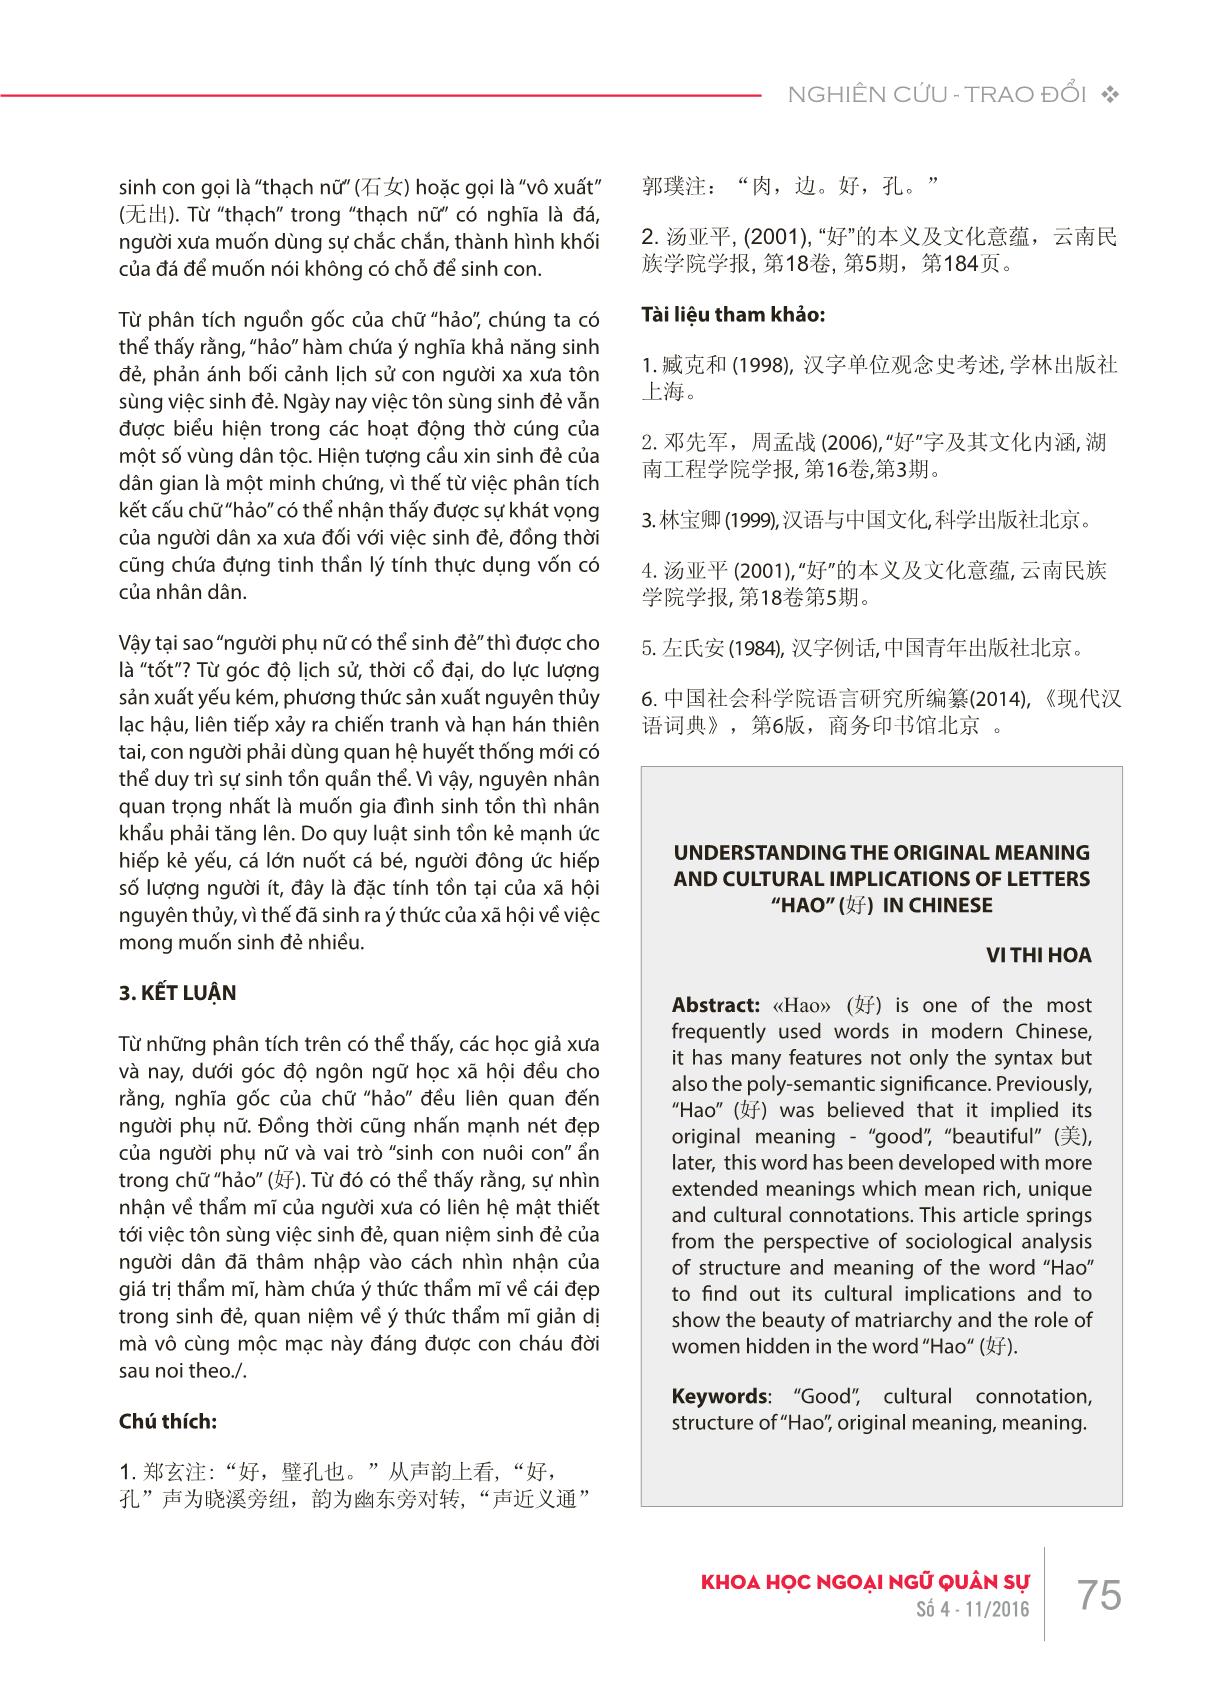 Tìm hiểu nghĩa gốc và hàm ý văn hóa của chữ “hảo” ( 好) trong tiếng Hán trang 3